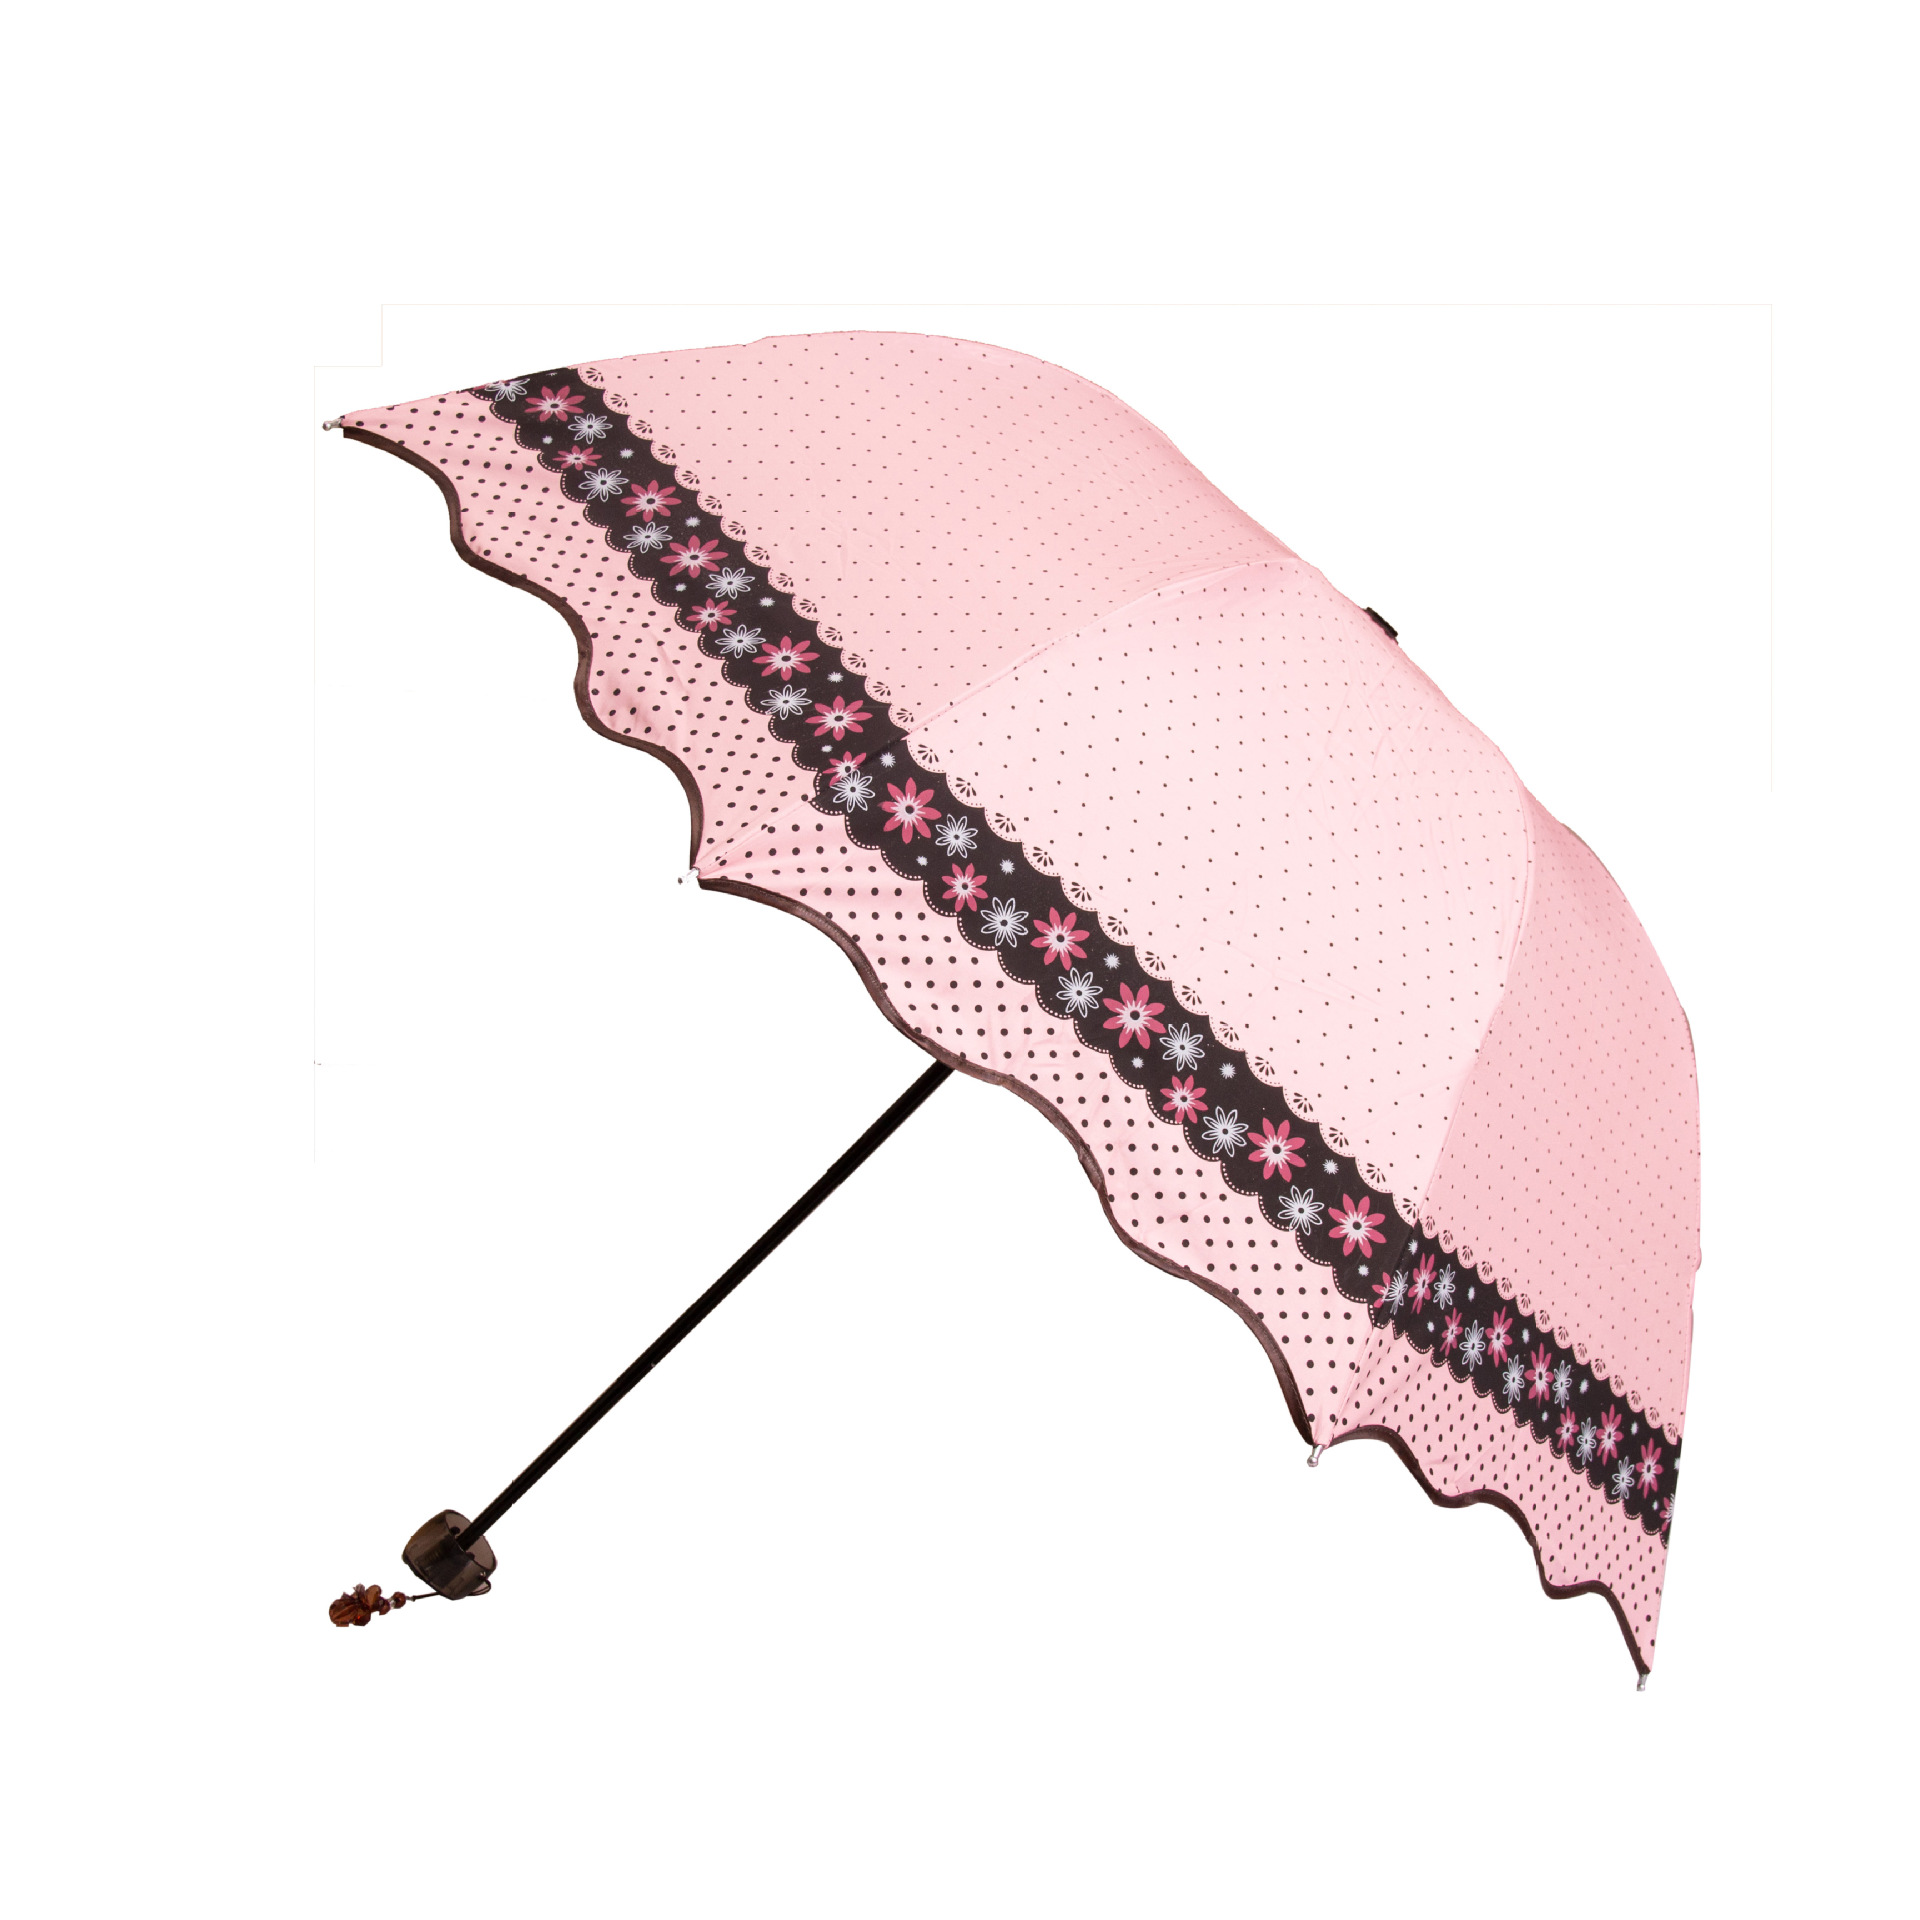 太阳伞-求购出口美国的女士折叠太阳伞,寻长期